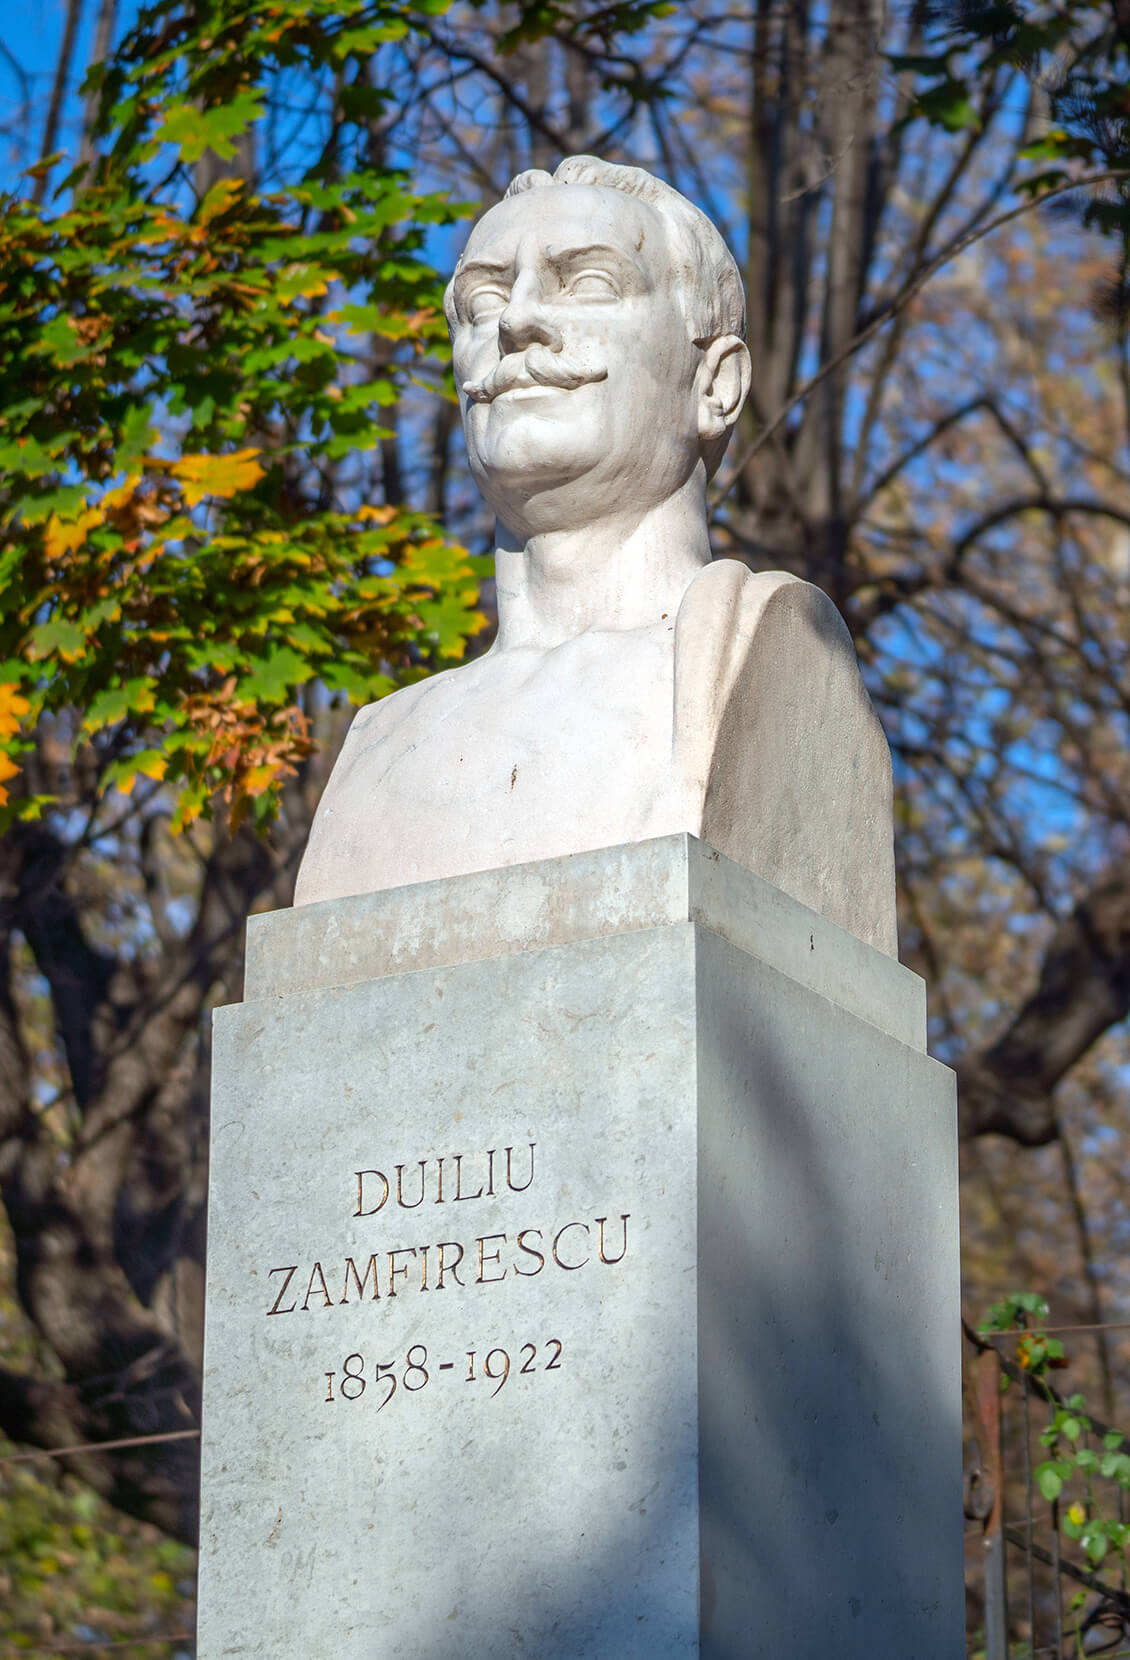 Duiliu Zamfirescu